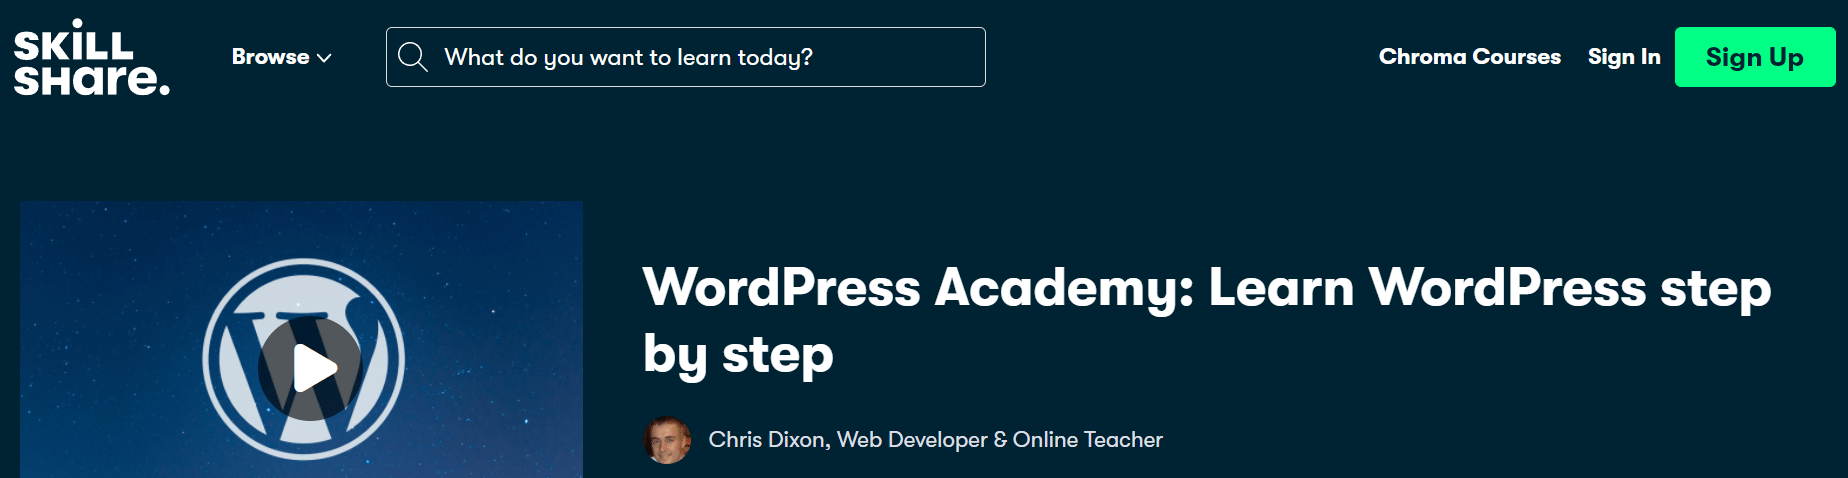 一步一步學習wordpress